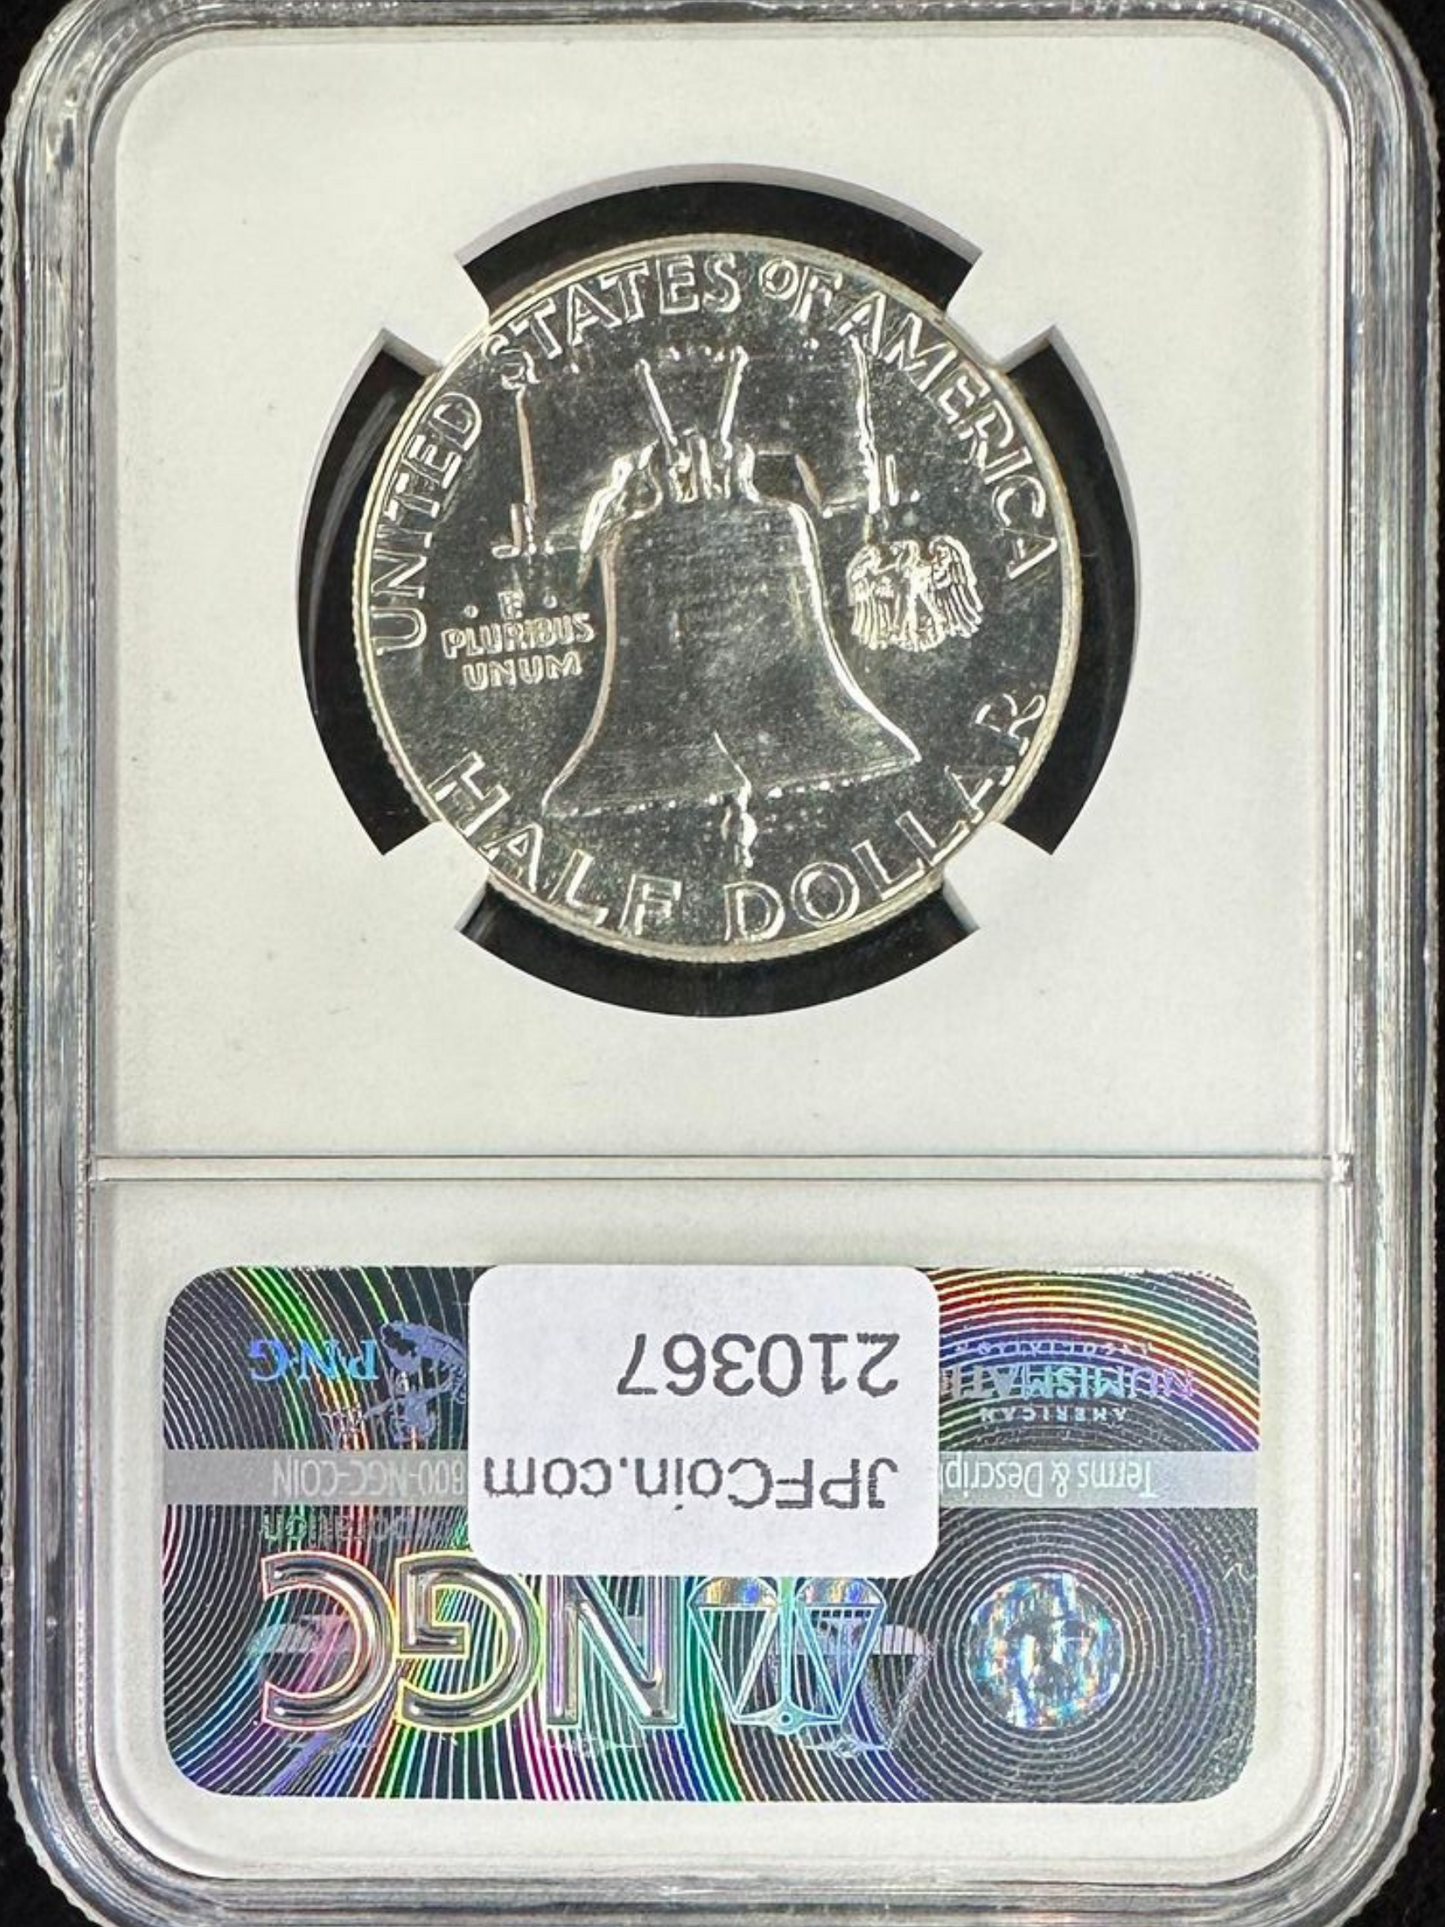 1960-P Franklin Half Dollar NGC PF66